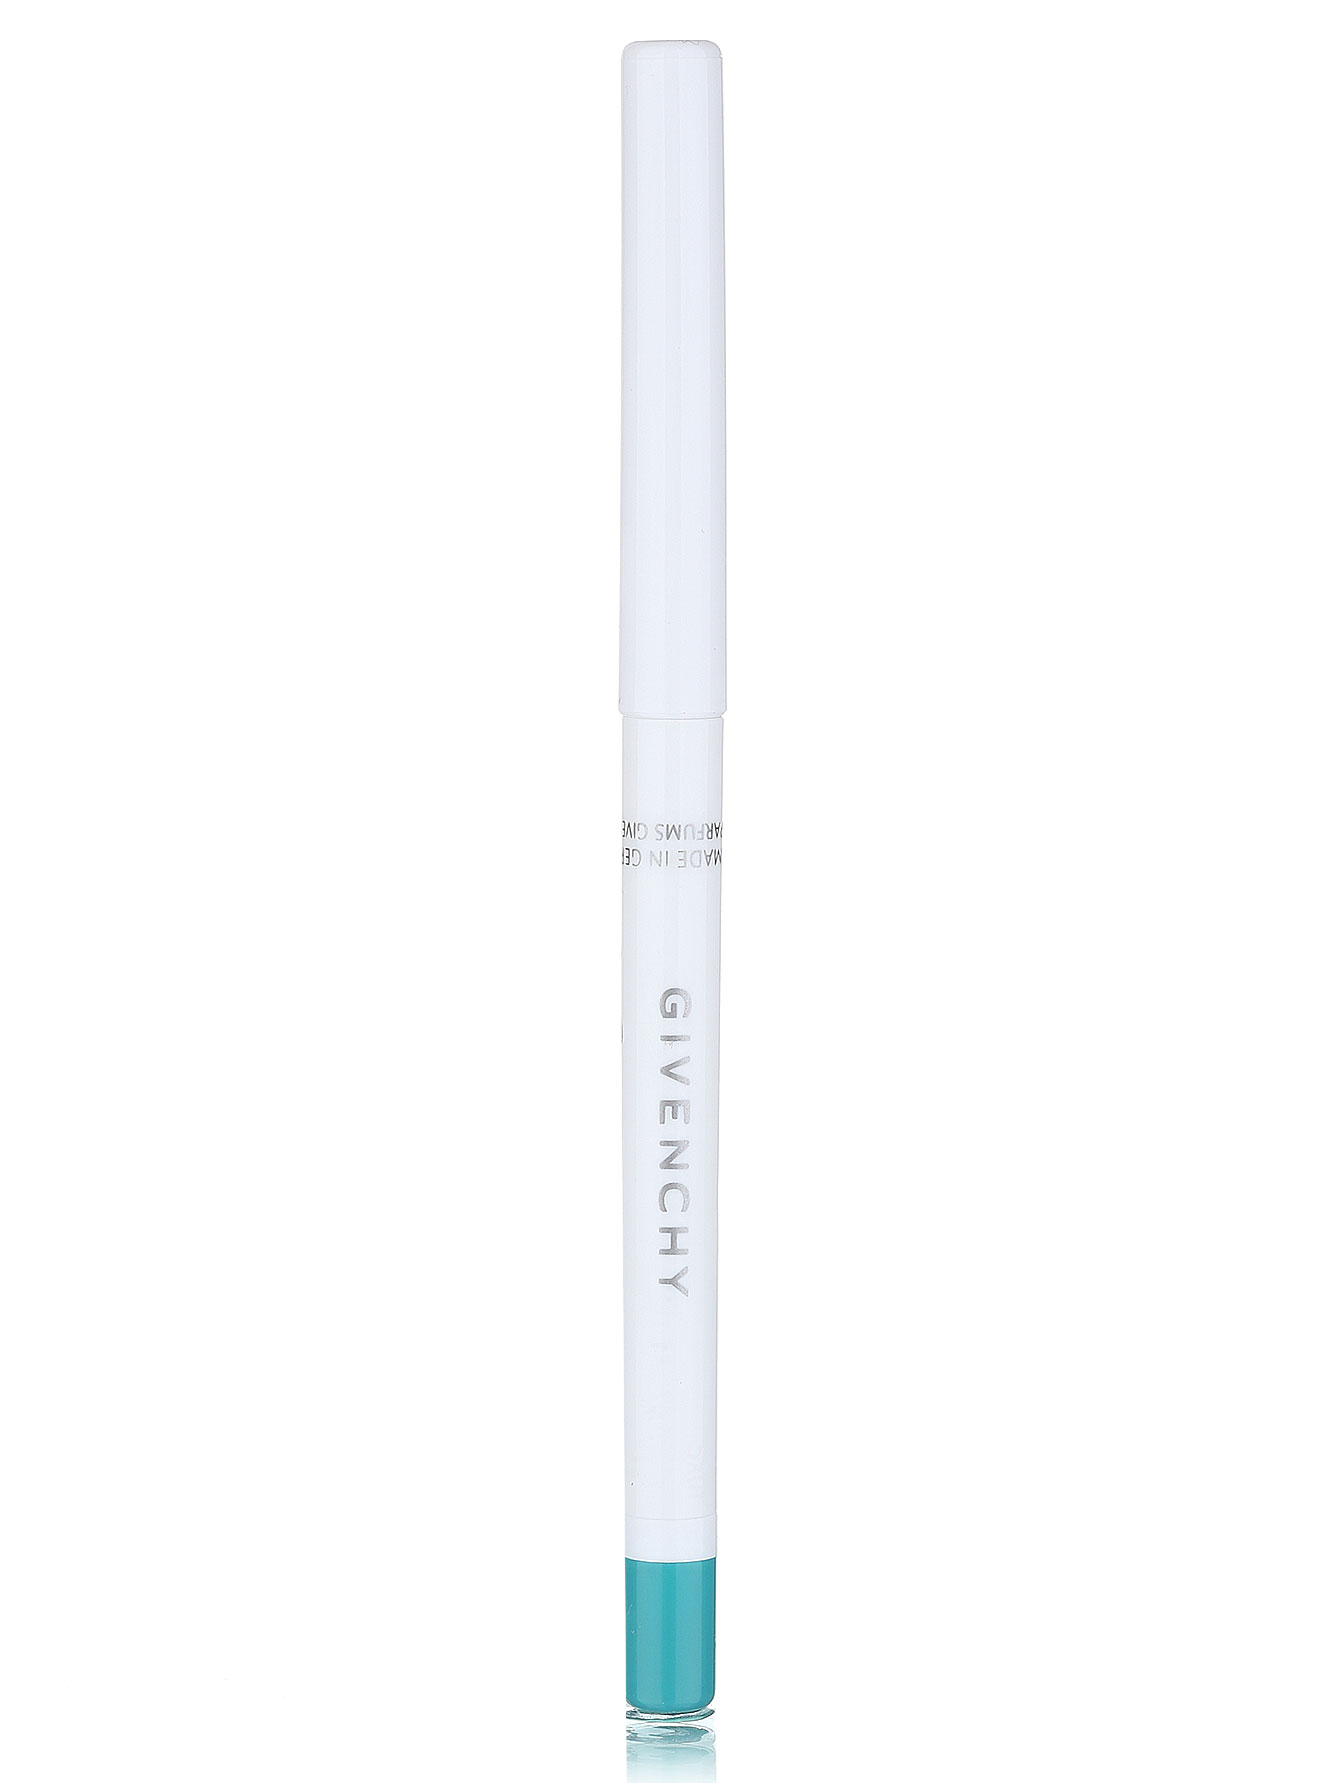  Водостойкий карандаш для глаз - Бирюзовый, Khol Couture - Модель Верх-Низ